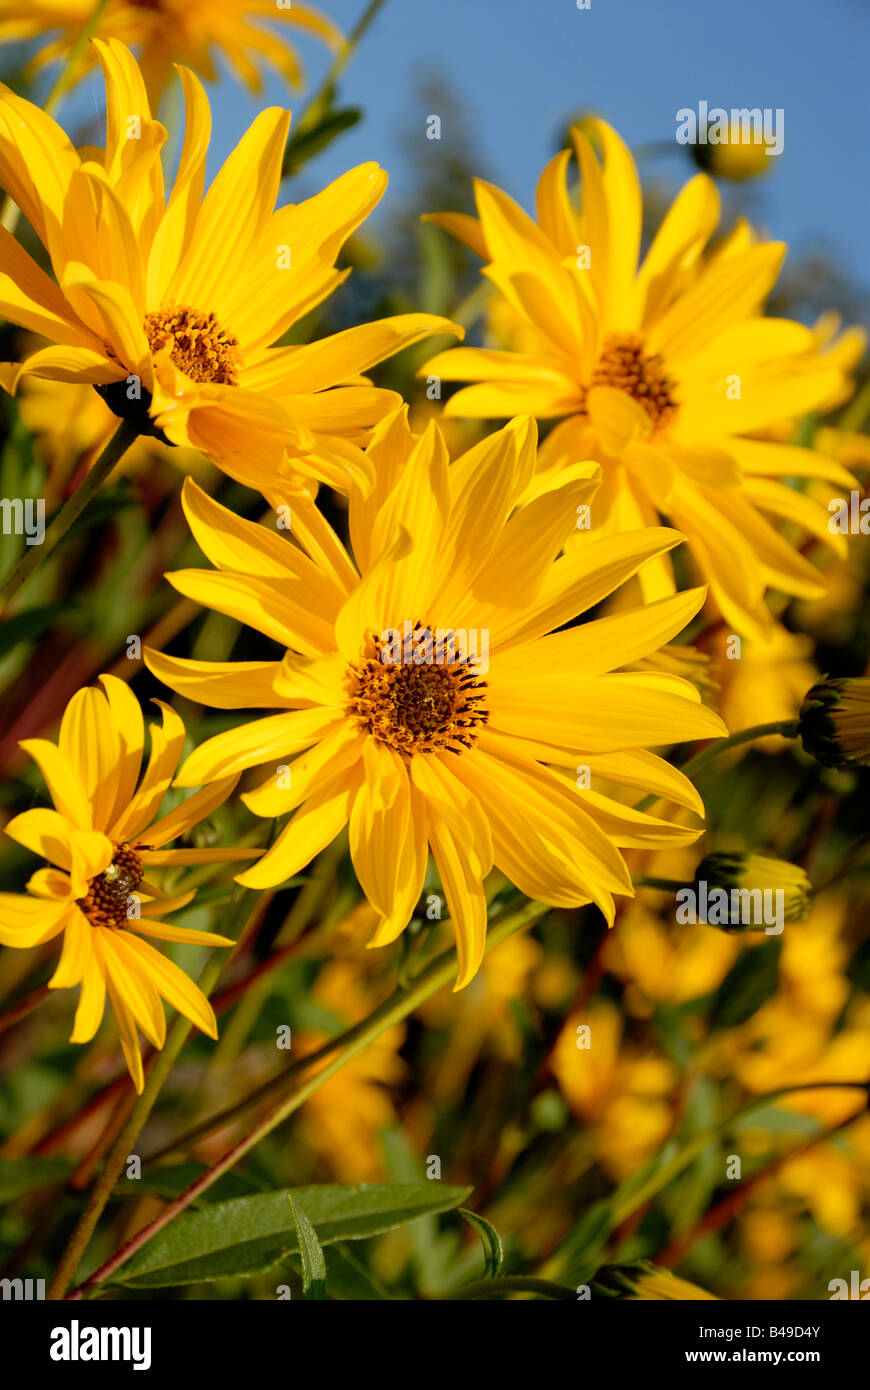 Stock Foto von der gelben Blüte Helianthus Maximiliani das Bild wurde gegen einen blauen Sommerhimmel Stockfoto